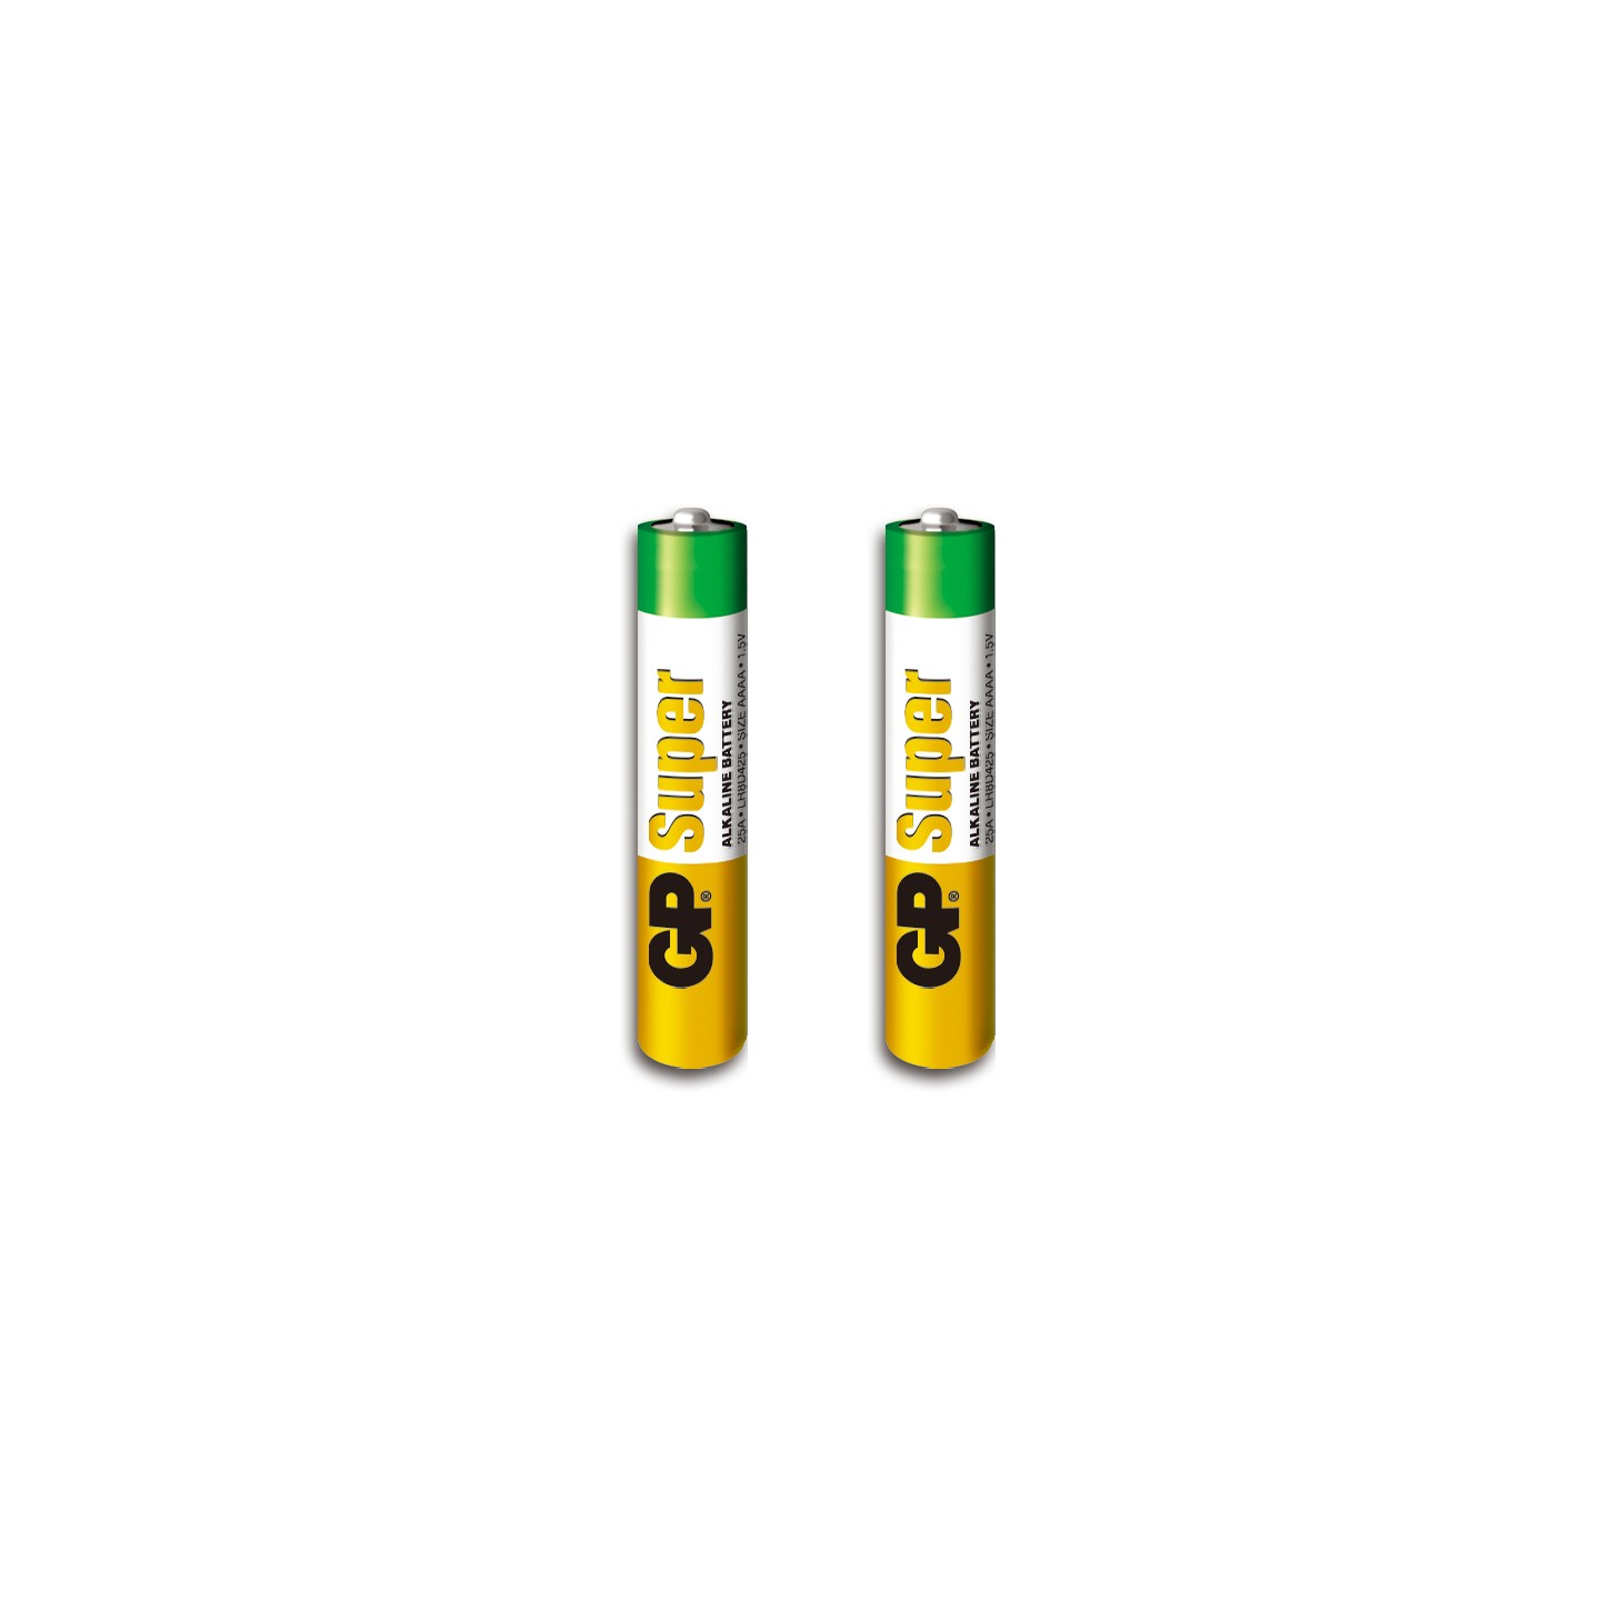 Батарейка Gp AAAA LR61 Super Alcaline * 2 (25A-U2 / 4891199058615) изображение 2